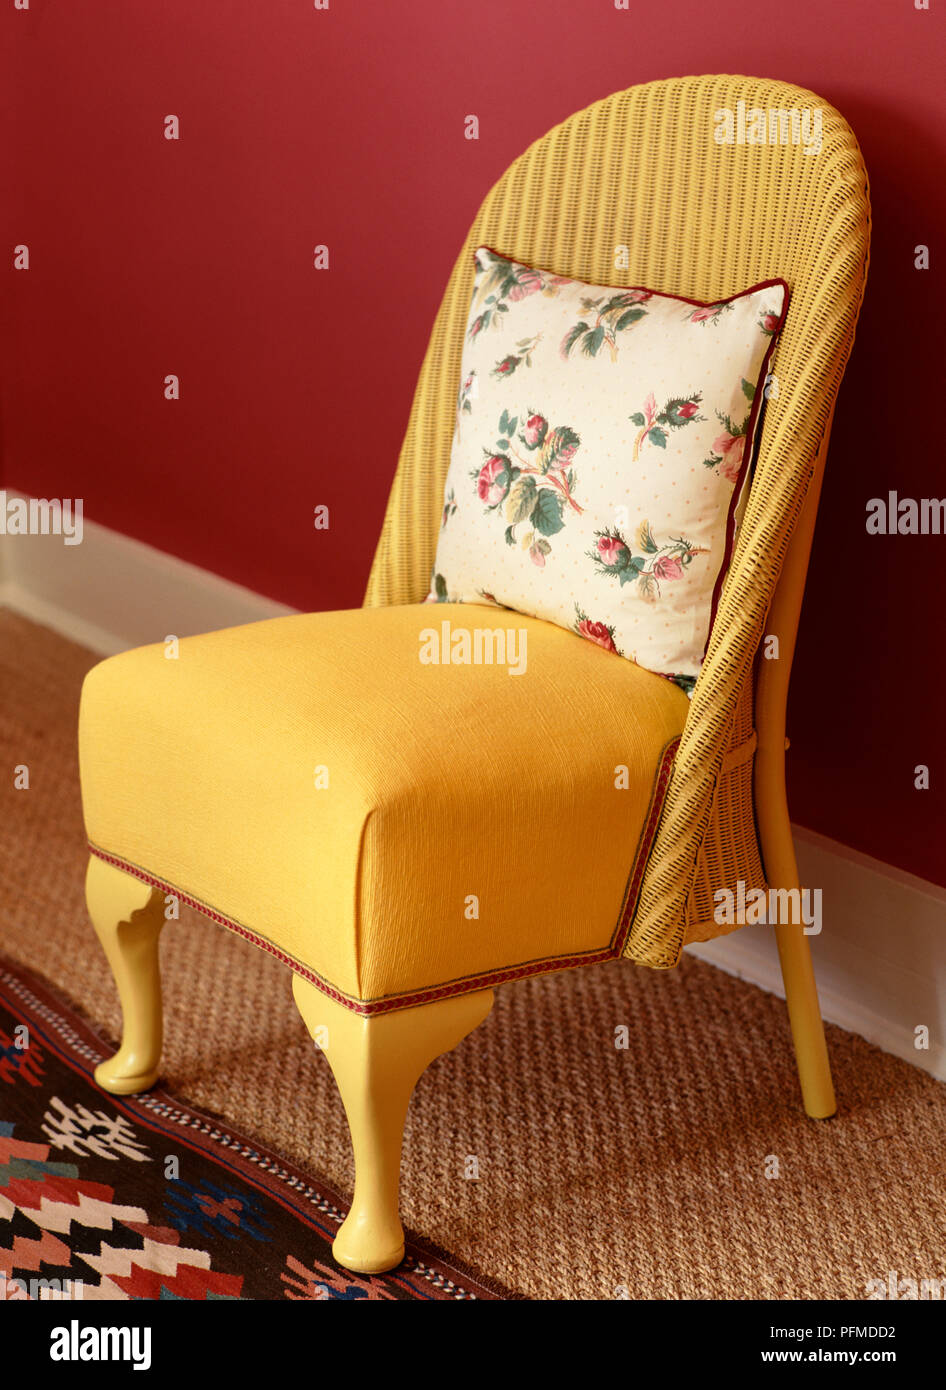 B&C jaune, rouge chaise à double coussin fleuri crème reposant contre chaise en arrière, rush paillassons et tapis à motifs sur plancher, mur rouge derrière. Banque D'Images